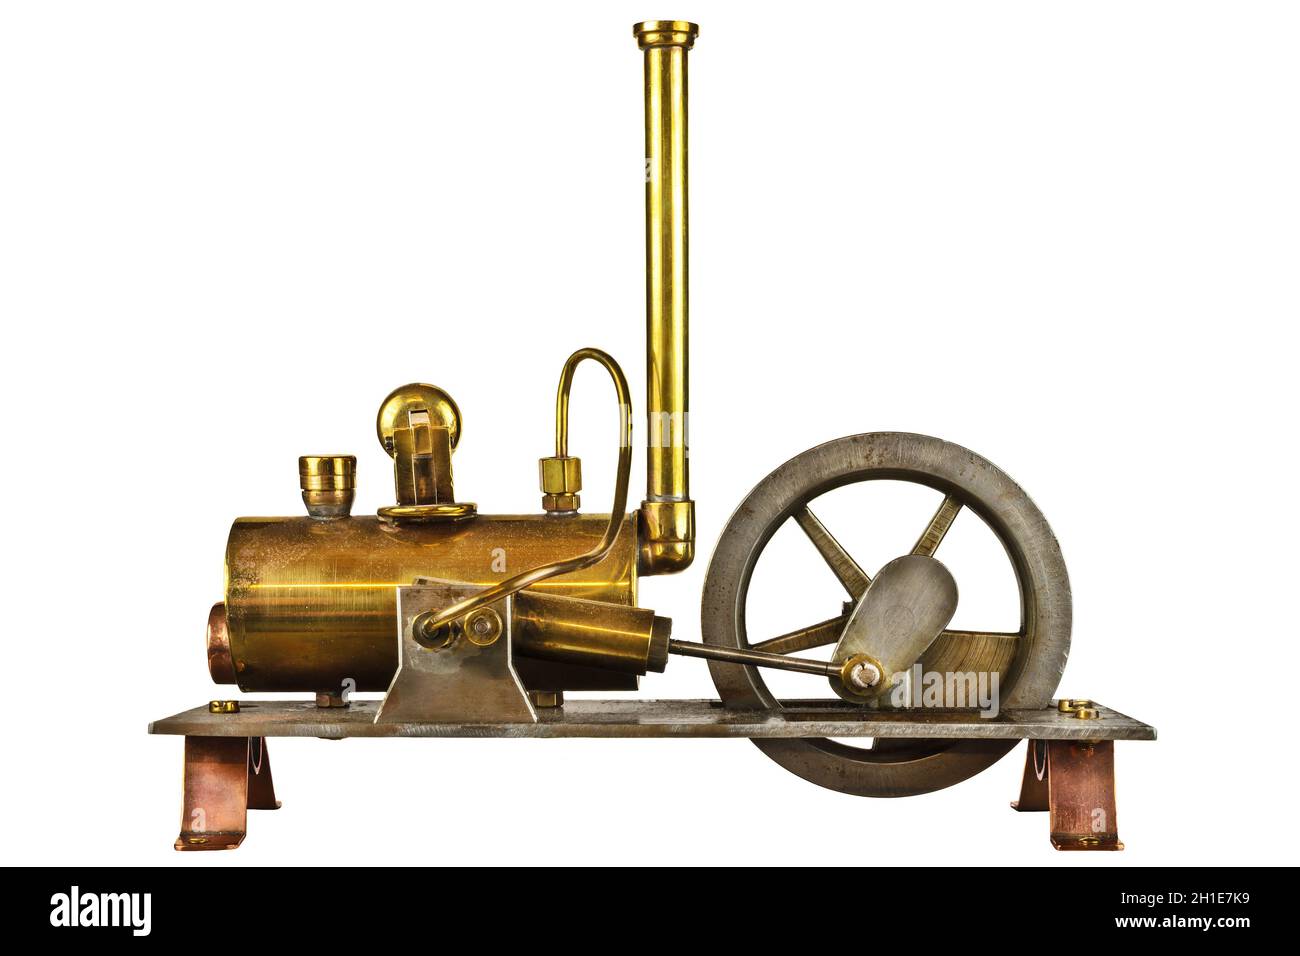 Pendiente Email Comenzar Maquina de vapor revolucion industrial Imágenes recortadas de stock - Alamy